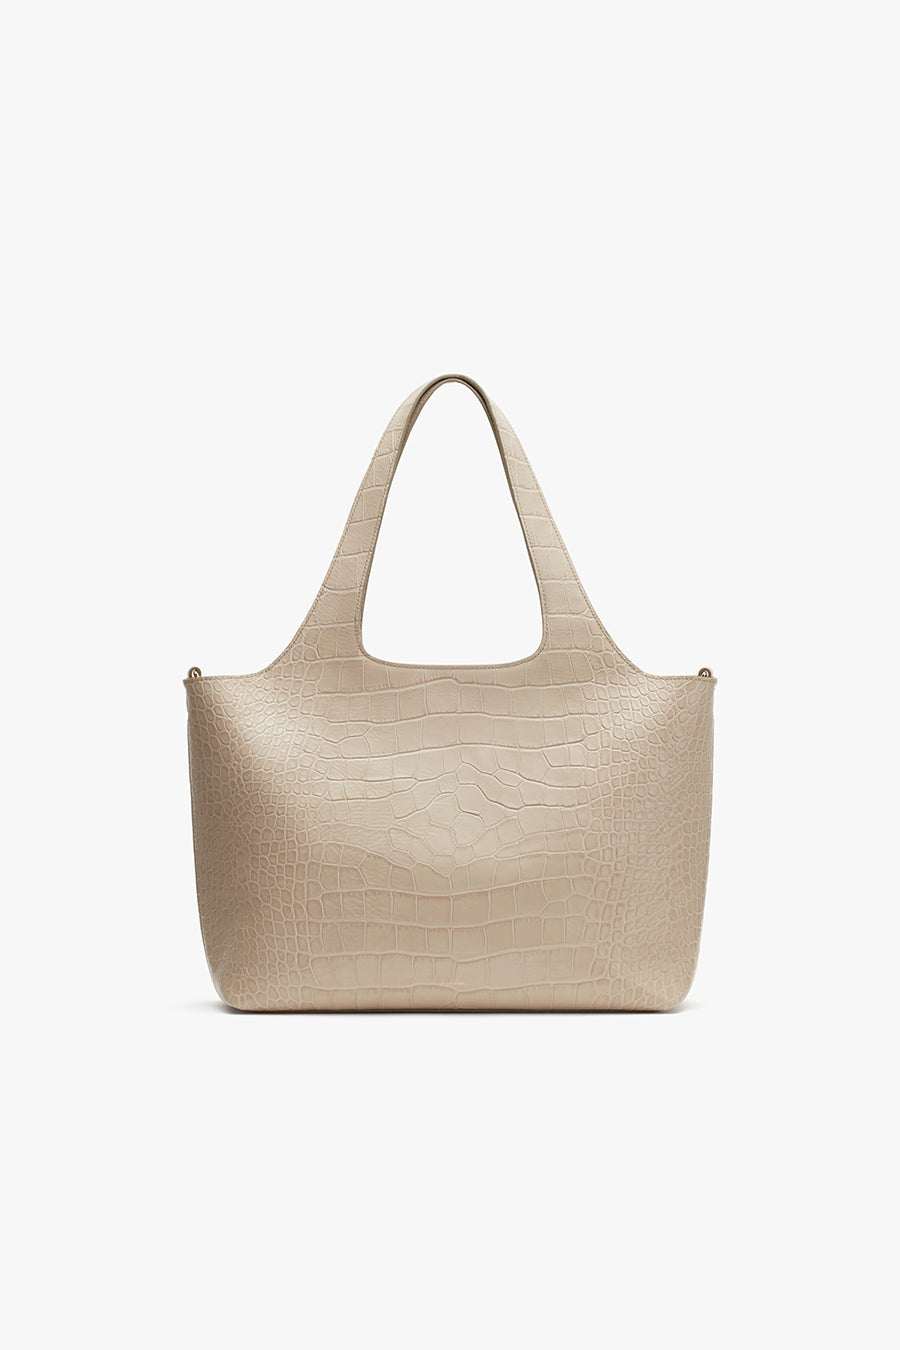 Bags – Cuyana